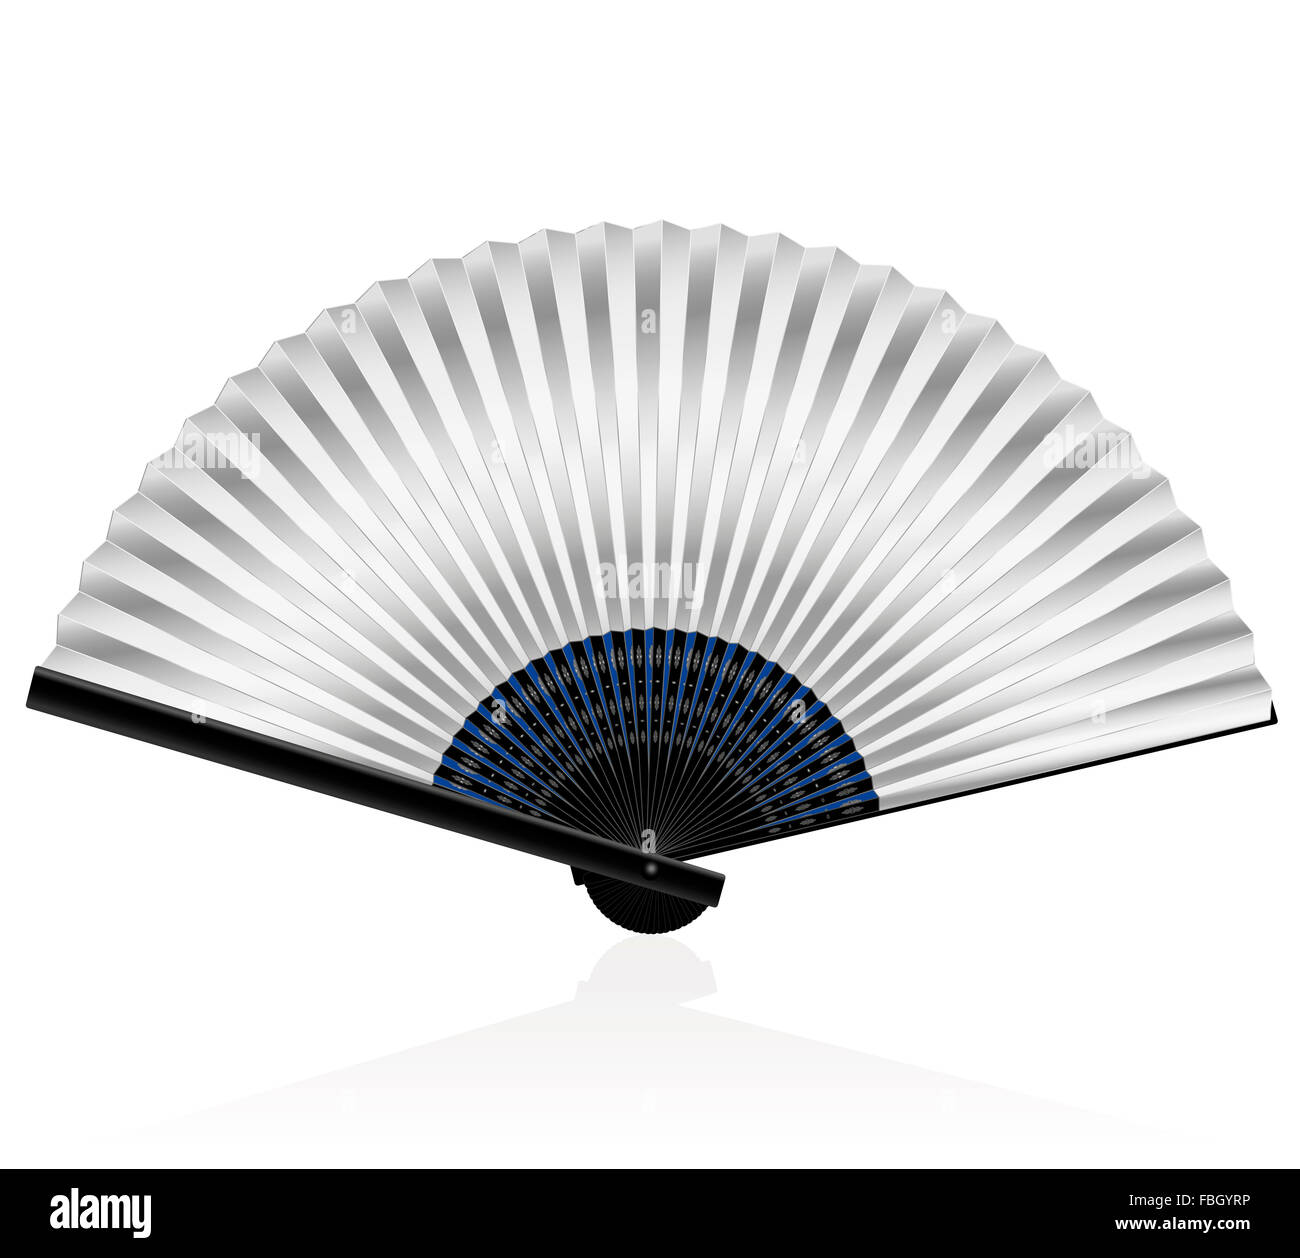 Silvery folding fan - elegant, stylish, posh. Isolated vector illustration on white background. Stock Photo